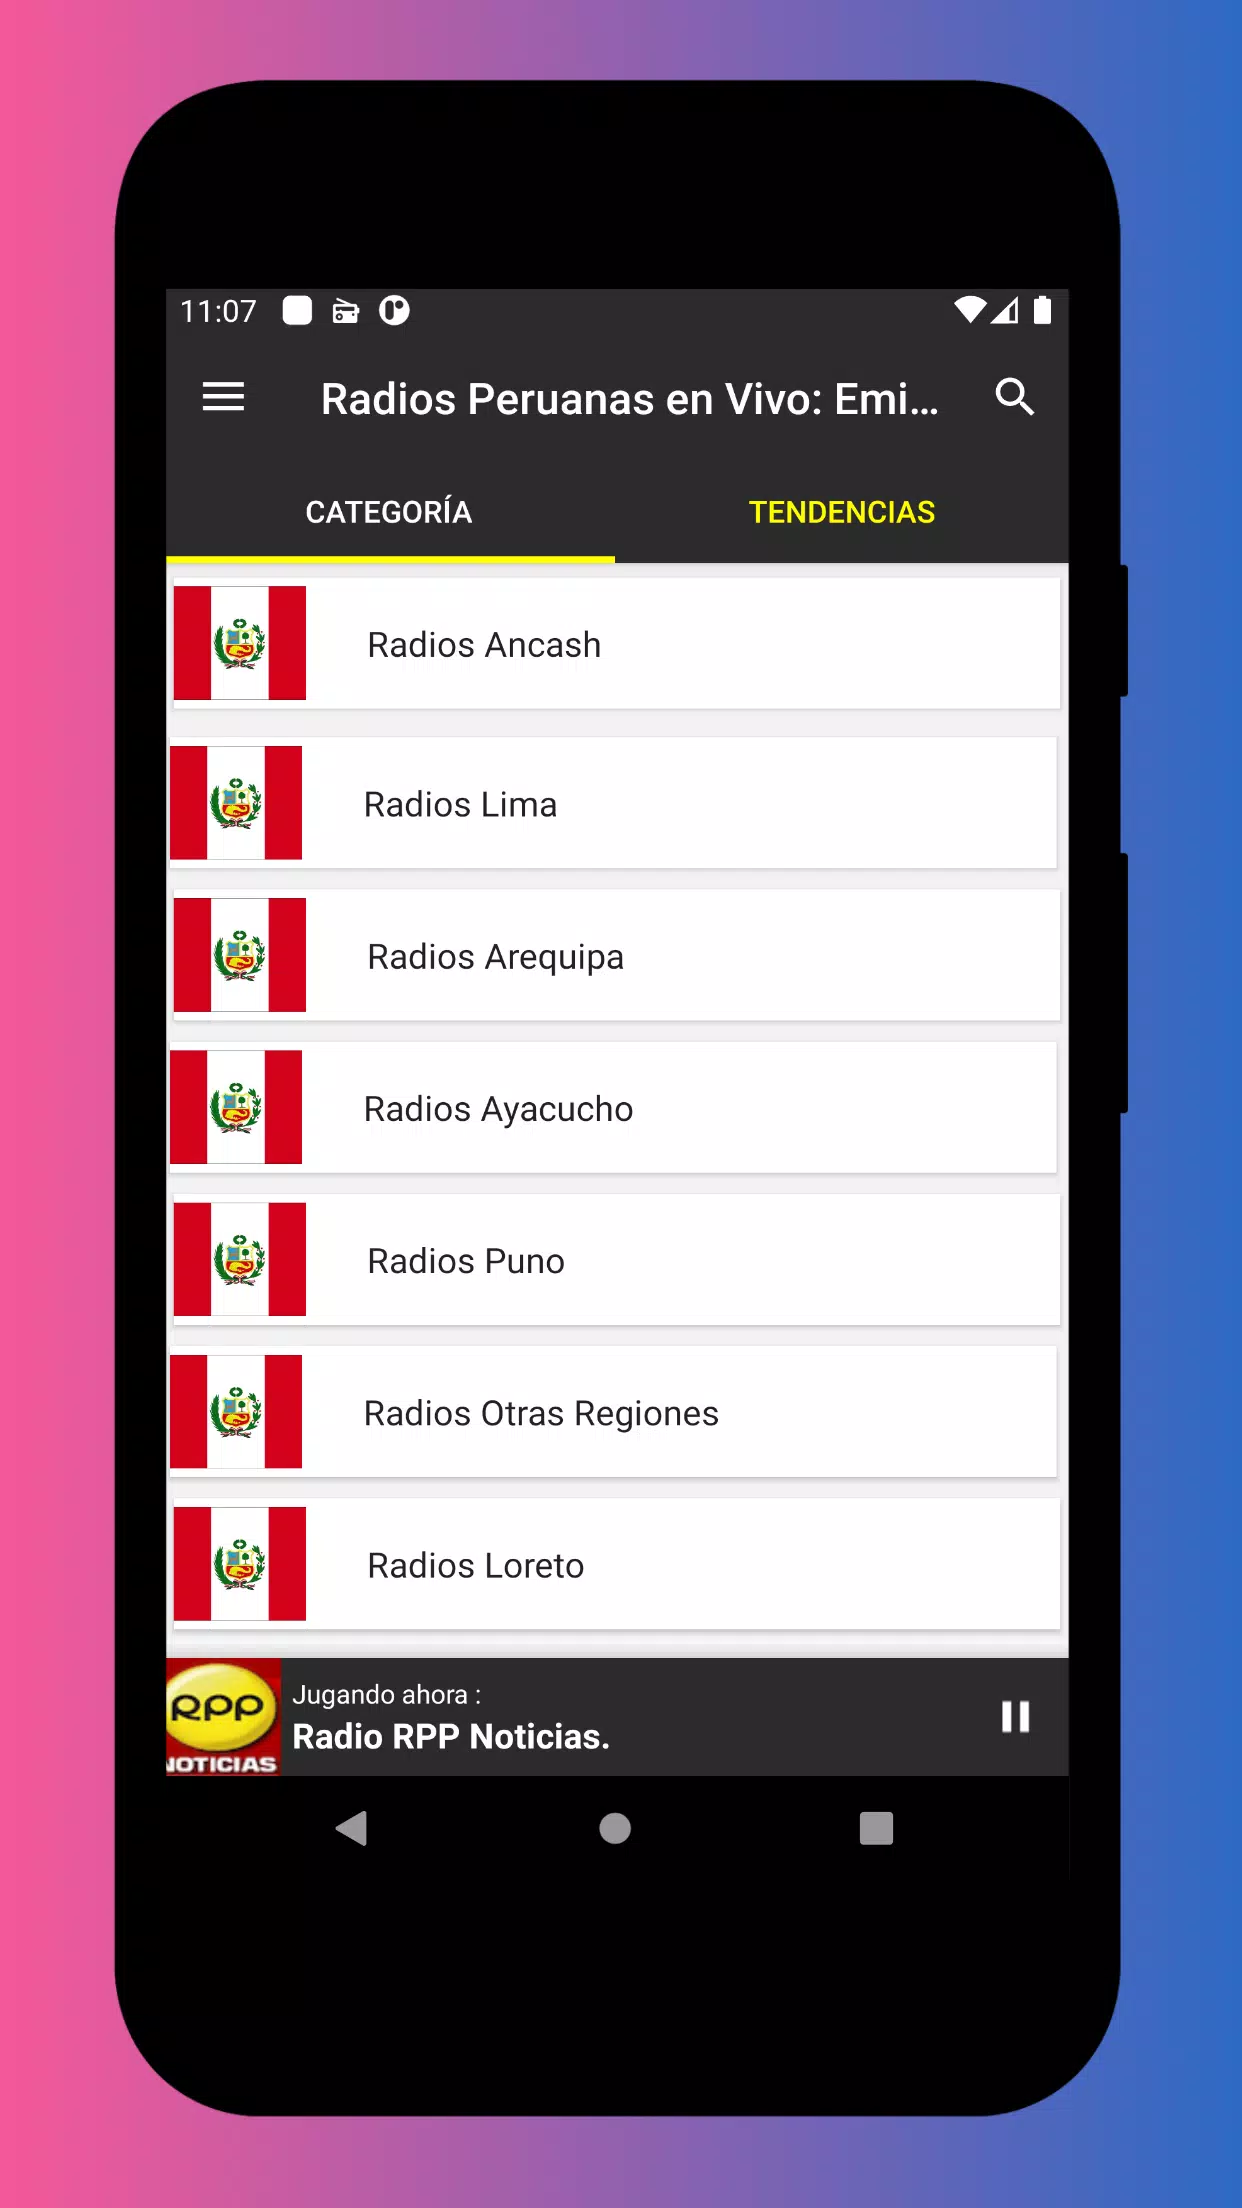 Radios Peruanas en Vivo AM FM APK für Android herunterladen